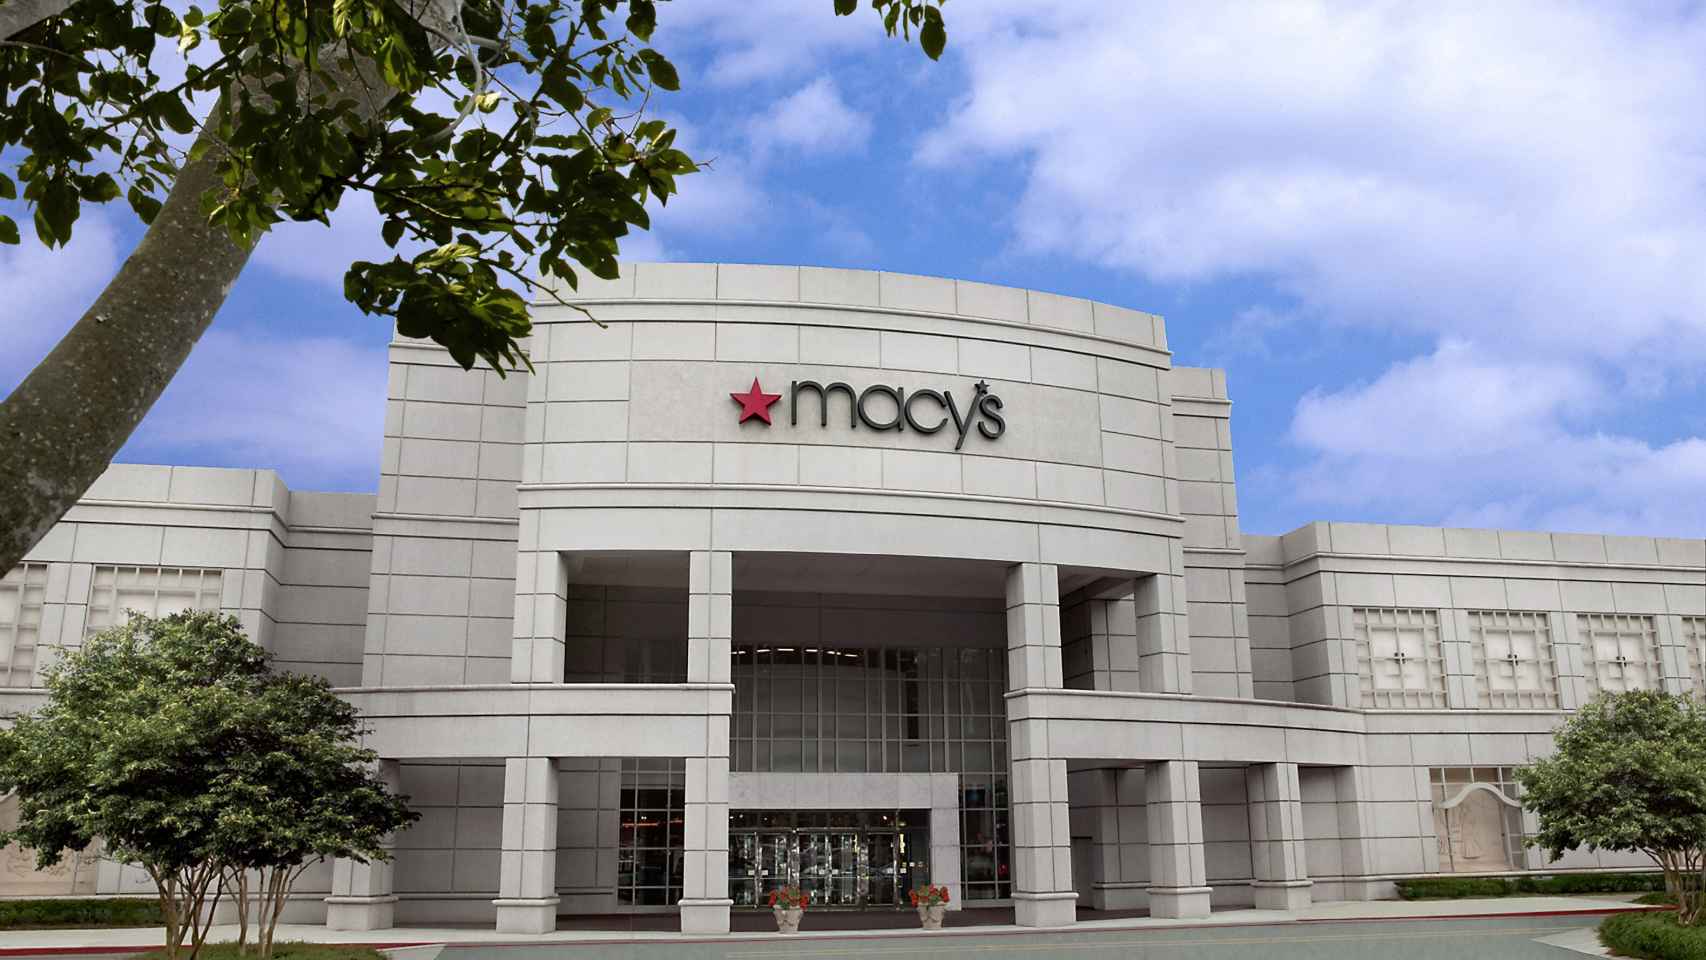 Los grandes almacenes Macy's despiden a 3.900 empleados de sus oficinas para ahorrar 560 millones